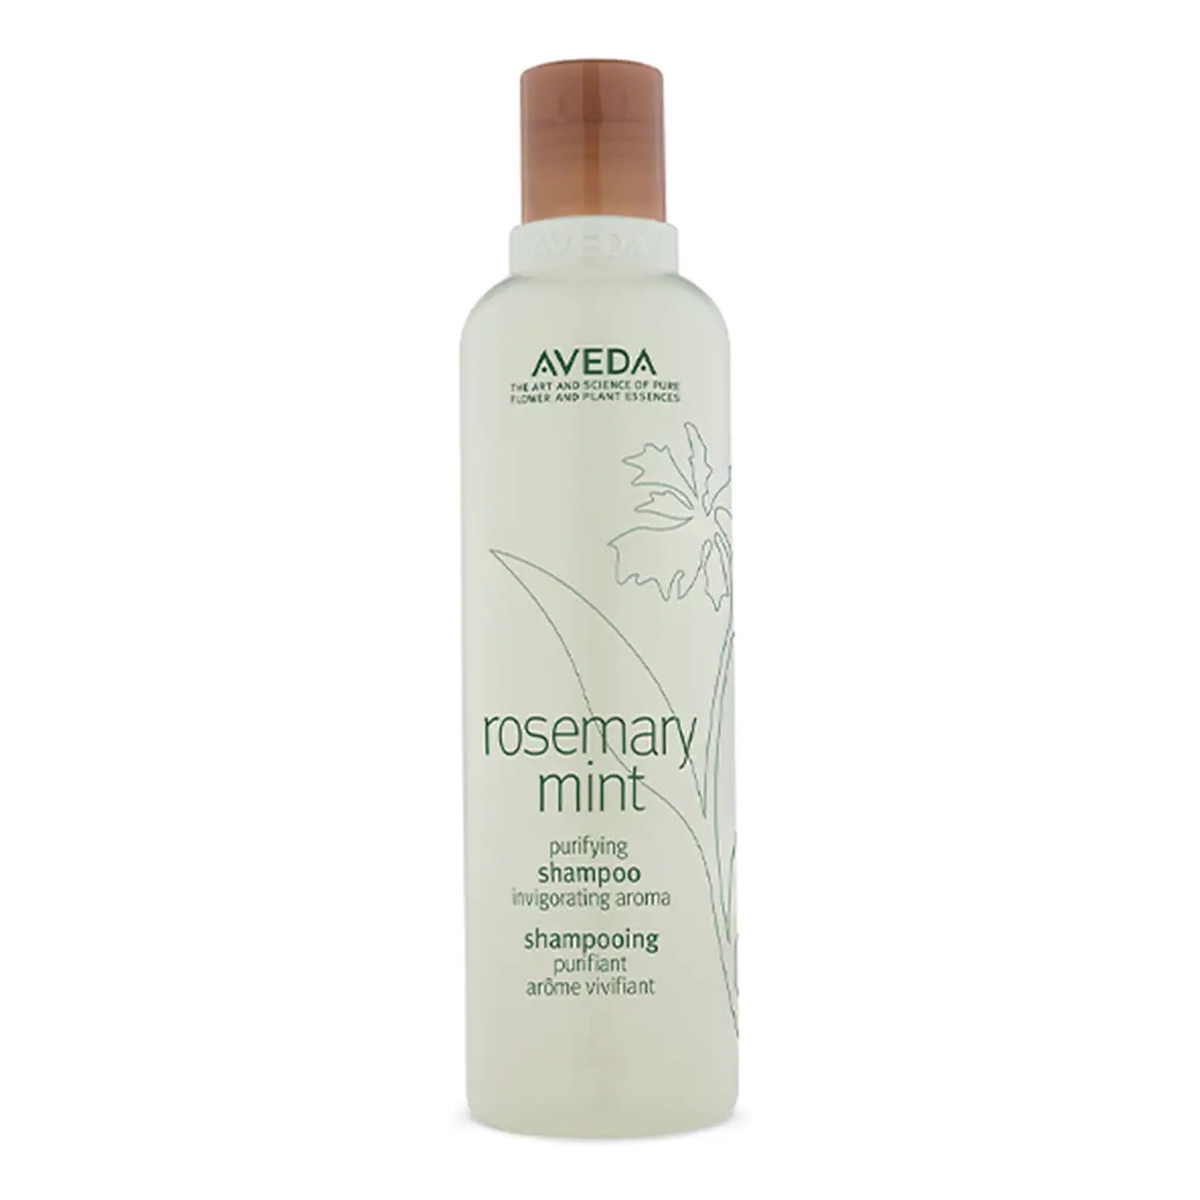 Aveda Rosemary mint purifying shampoo oczyszczający szampon do włosów 250ml